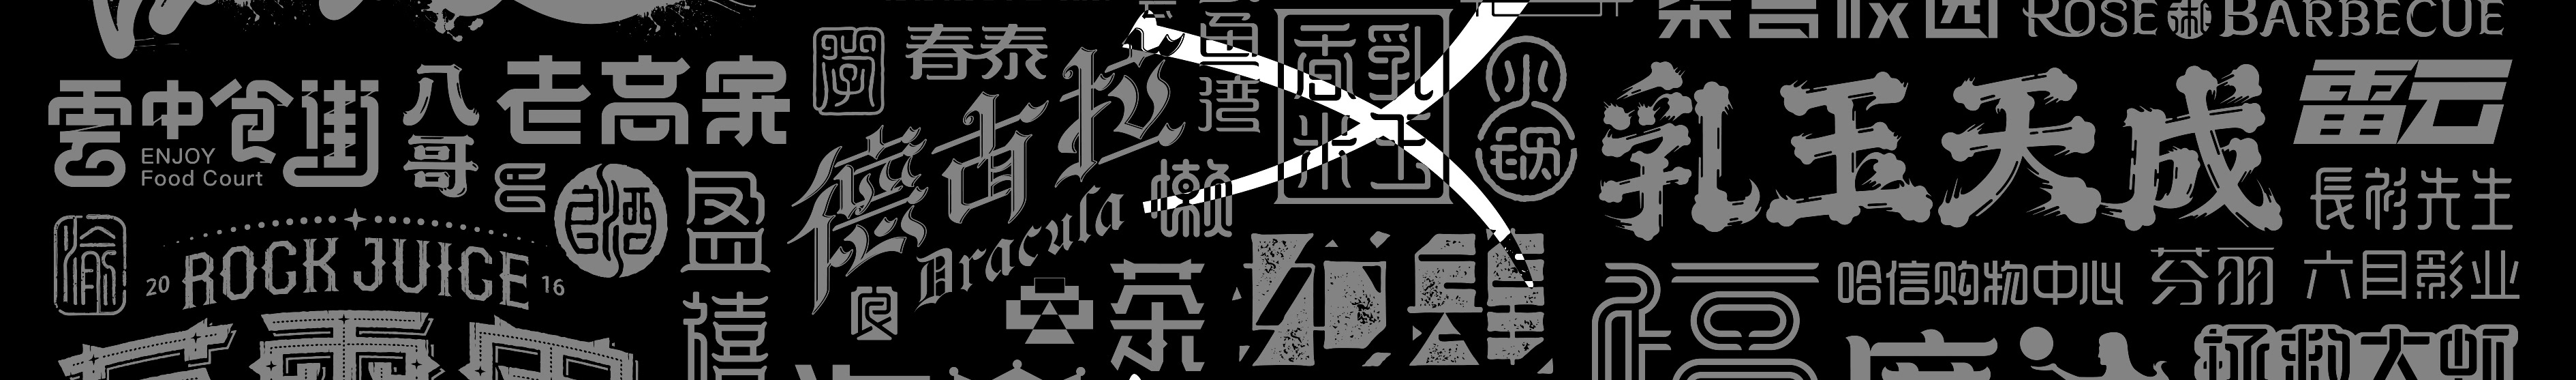 xun liu's profile banner